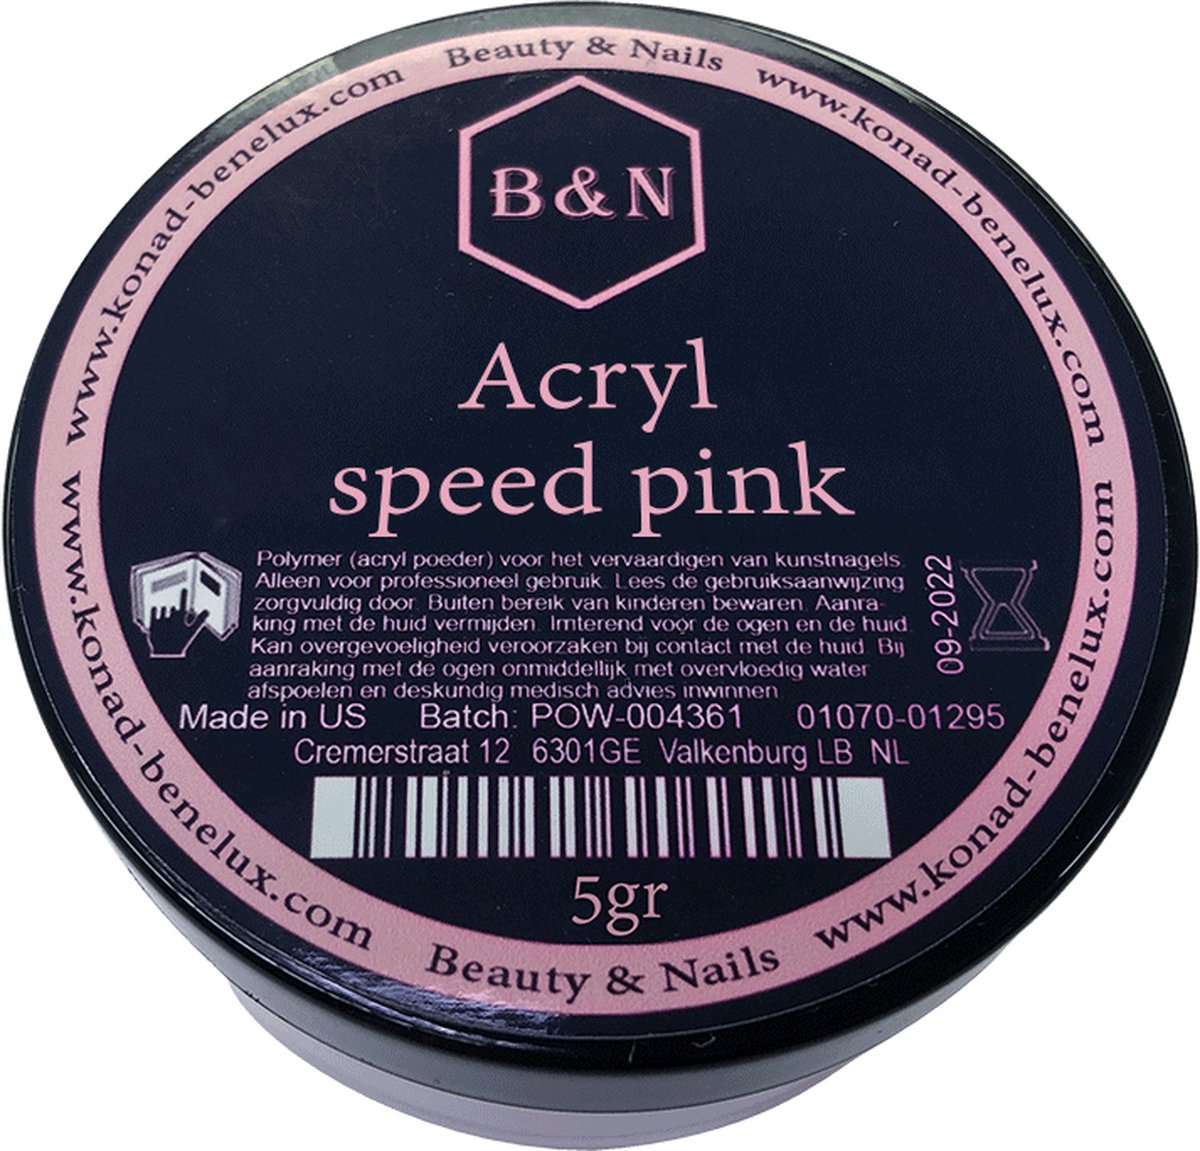 Acryl - speed pink - 5 gr | B&N - acrylpoeder - VEGAN - acrylpoeder